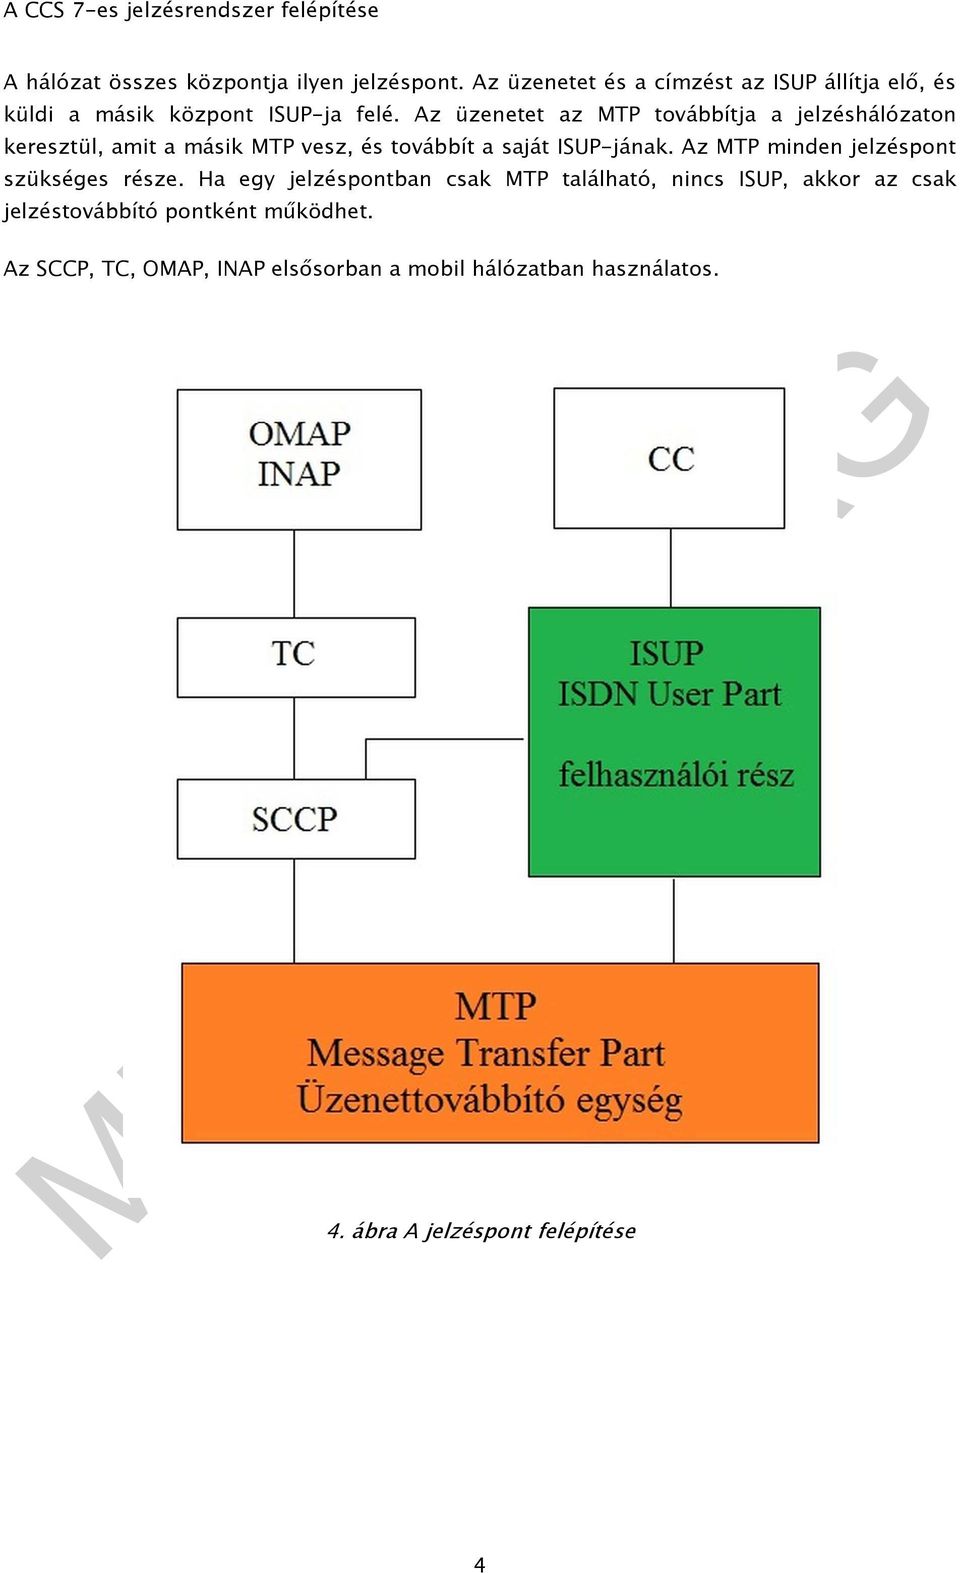 Az üzenetet az MTP továbbítja a jelzéshálózaton keresztül, amit a másik MTP vesz, és továbbít a saját ISUP-jának.